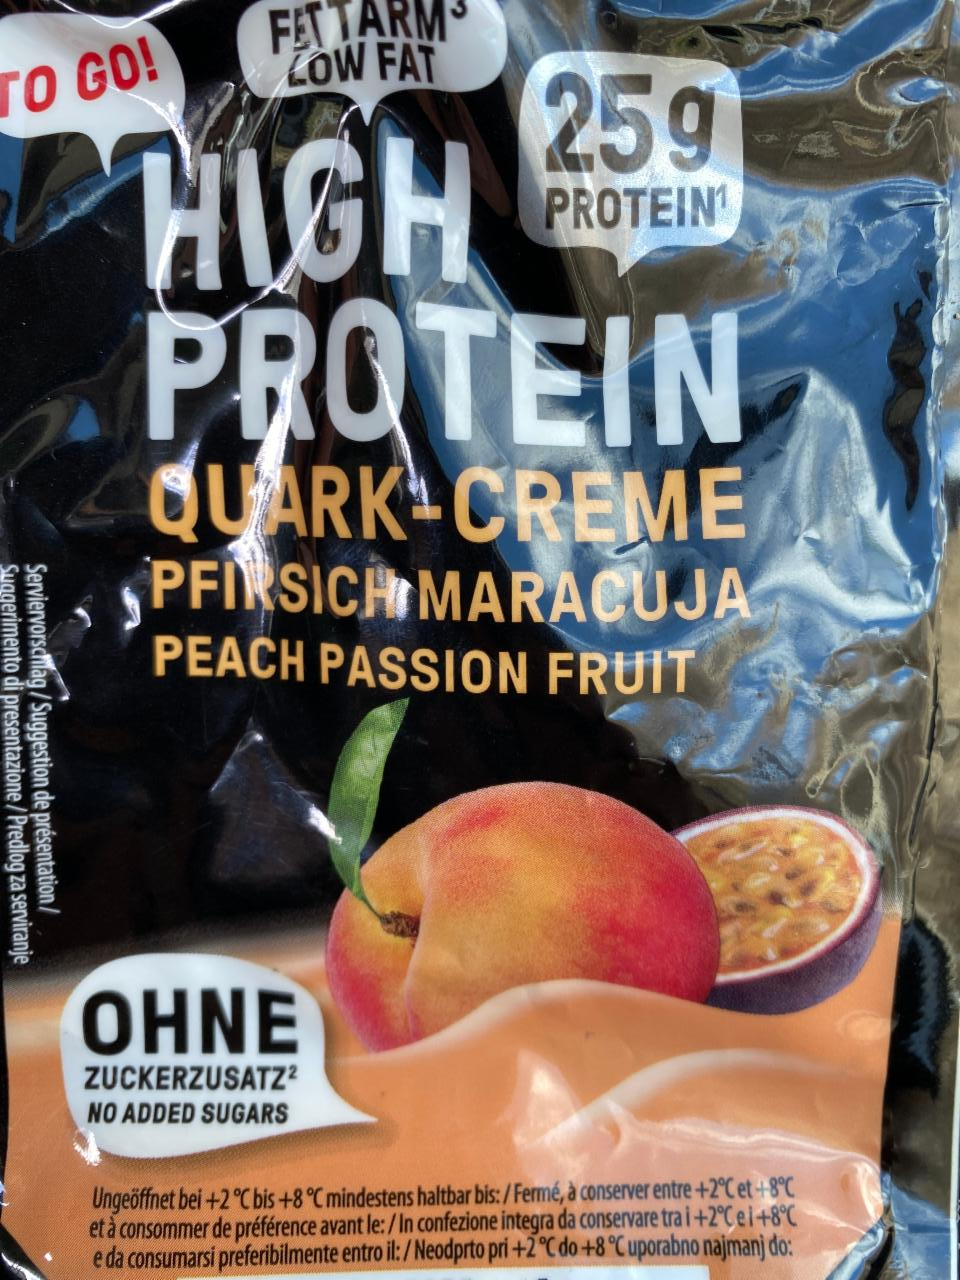 Фото - протеиновый кисломолочный продукт кварк кремовый персик - маракуйя To GO!